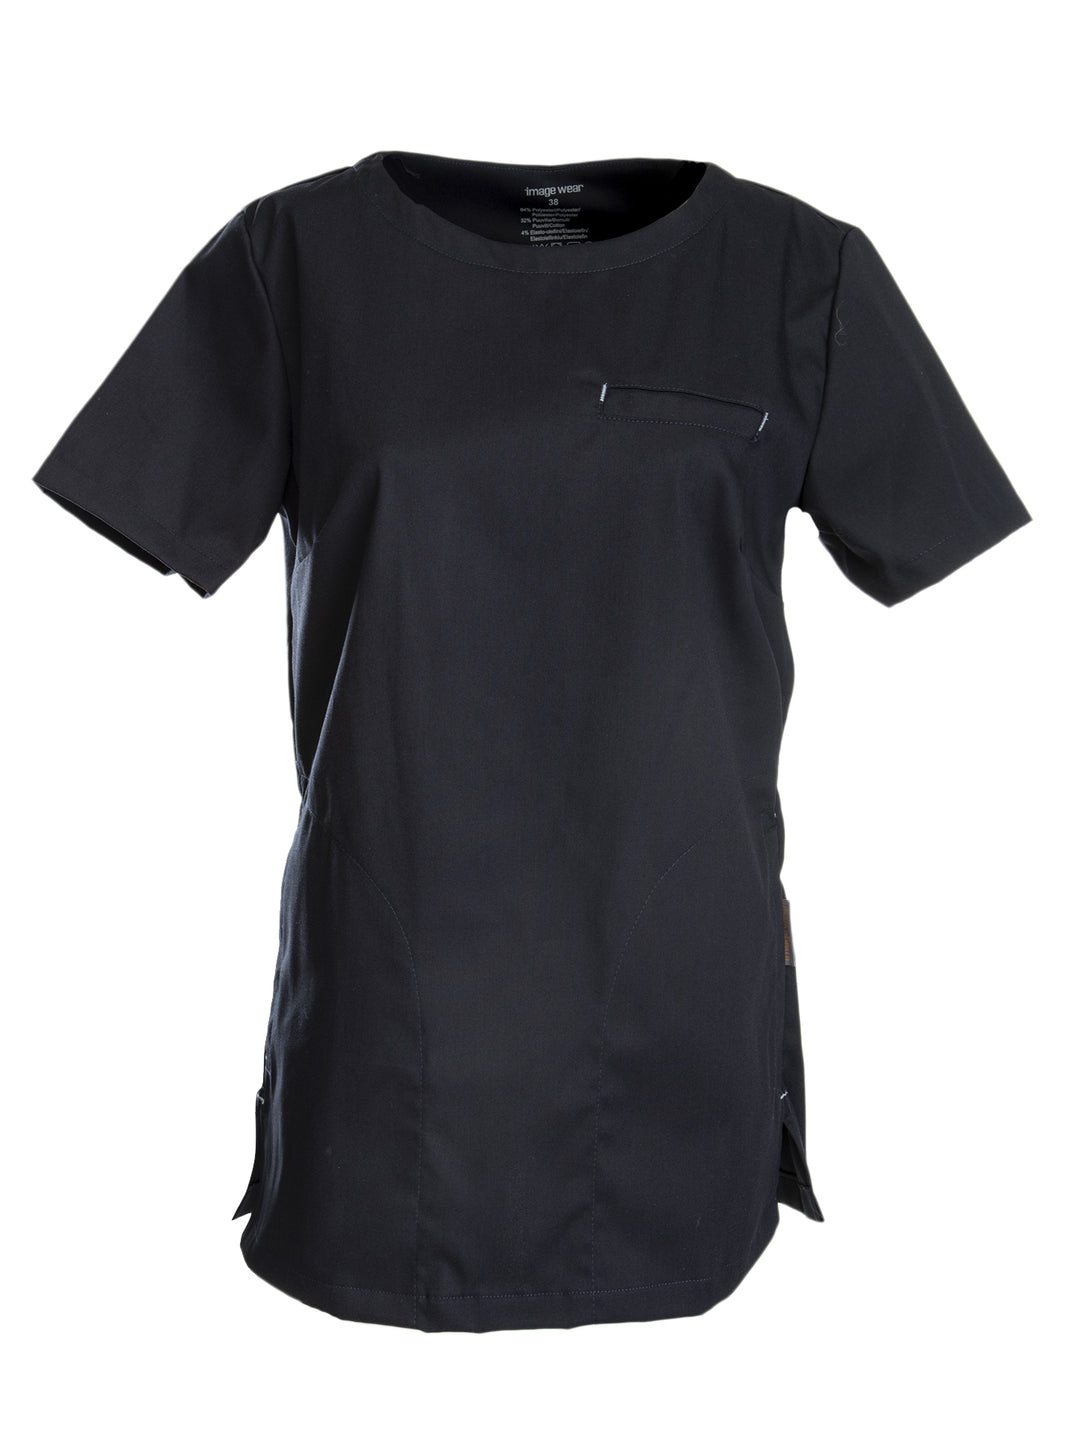 Hoitotyöhön sopiva lyhythihainen naisten musta paita. Paidassa on useita taskuja mm. rintatasku ja alataskut.